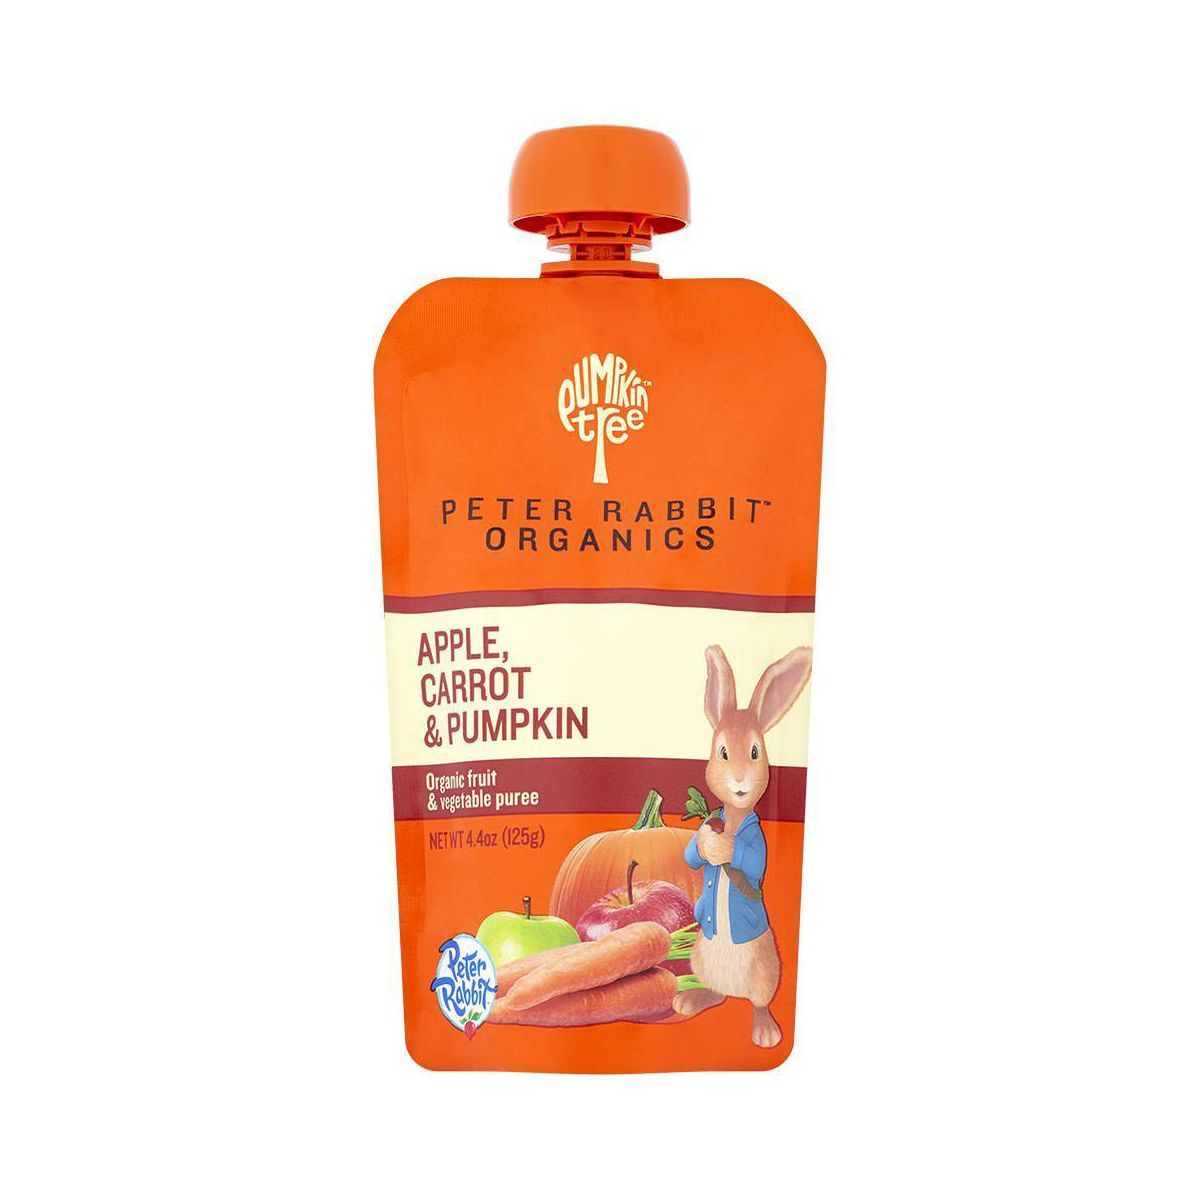 Peter Rabbit Organics Apple Carrot & Pumpkin Baby Food Pouch - 4.4oz | Target